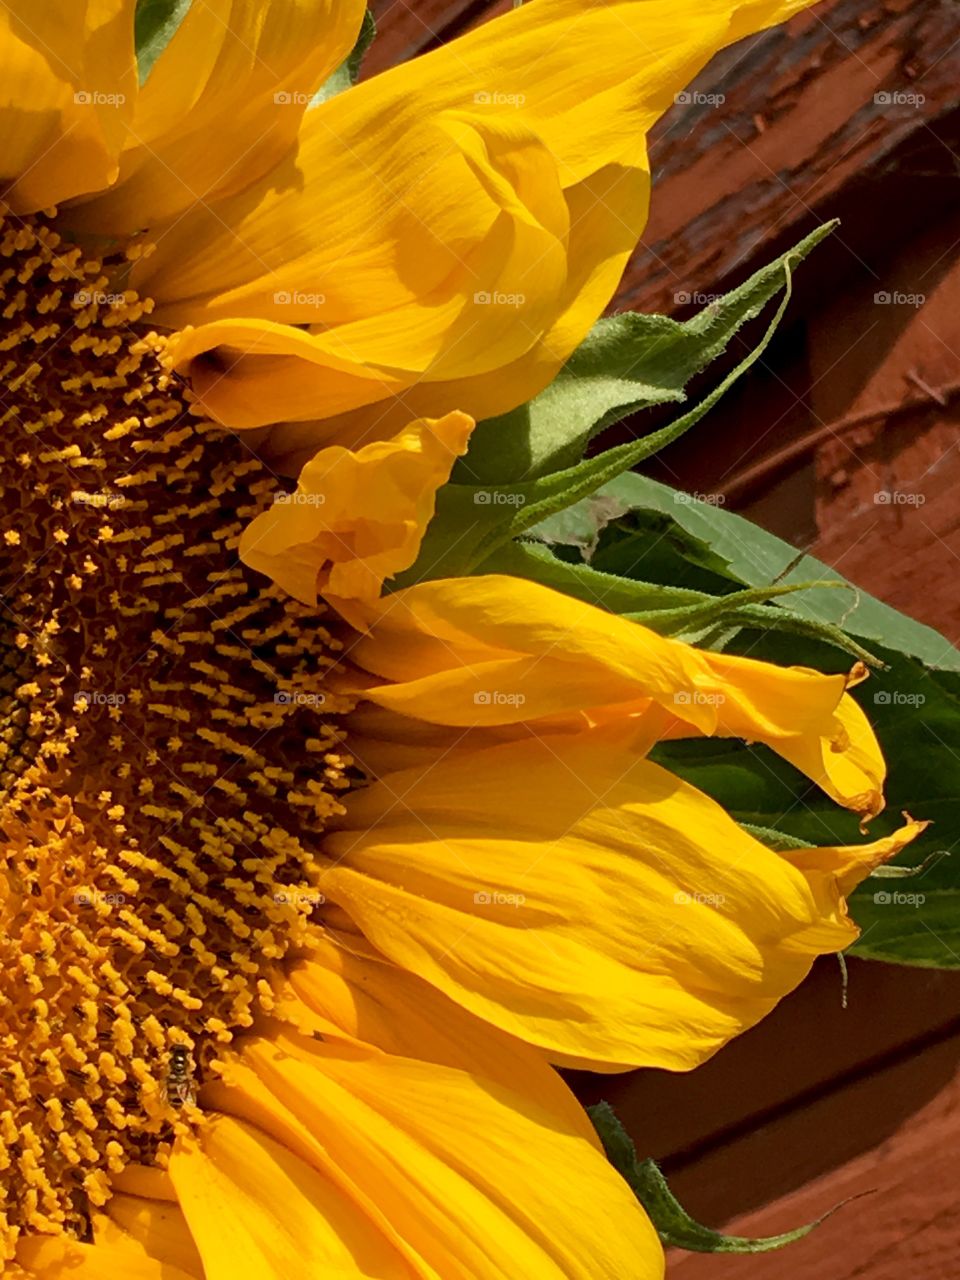 Sunflower beauty